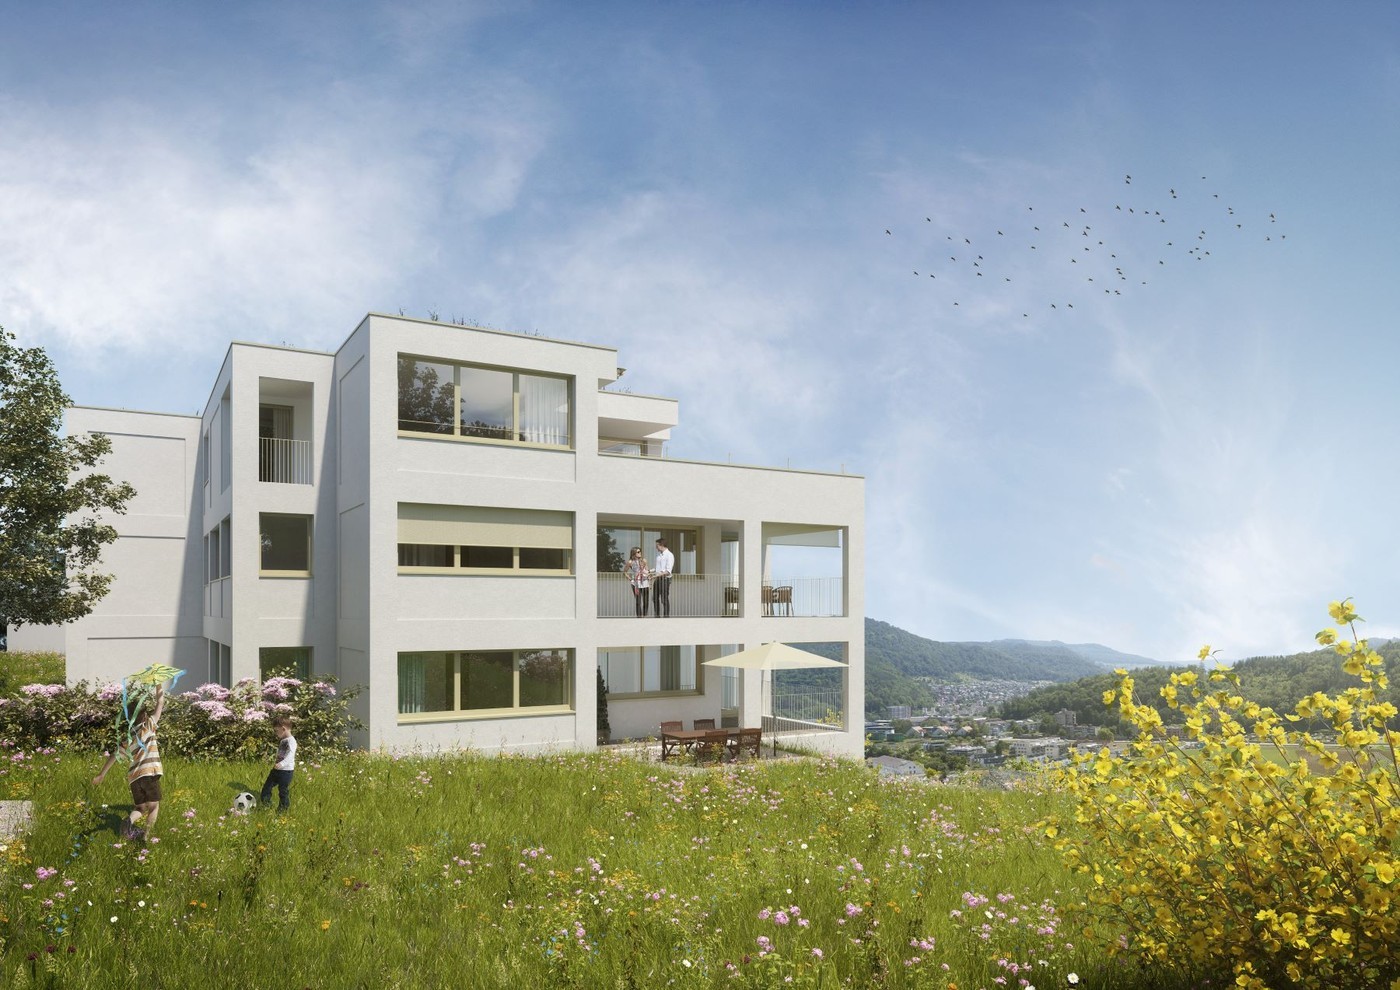 Wunderschöne Neubau - Familienwohnung im schönen Liestal zu vermieten - Erstvermietung